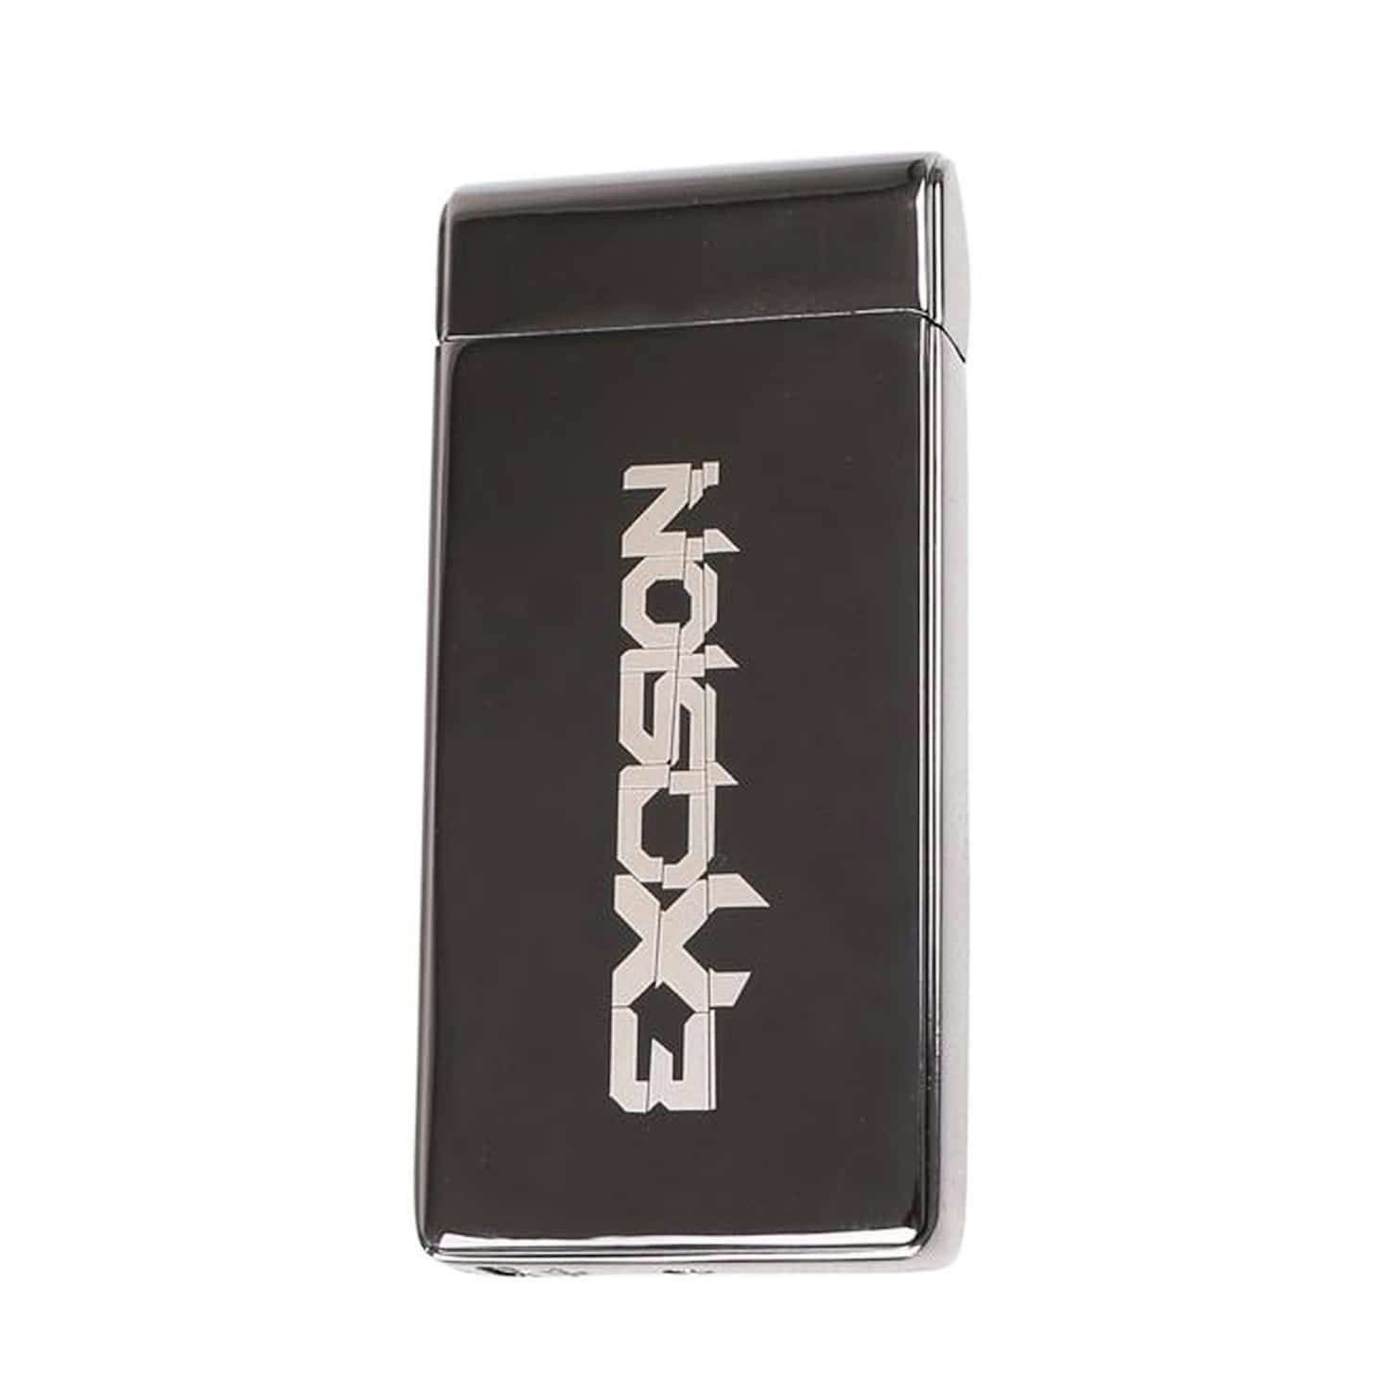 Excision X Flame Lighter - Brushed Black Version 2.0